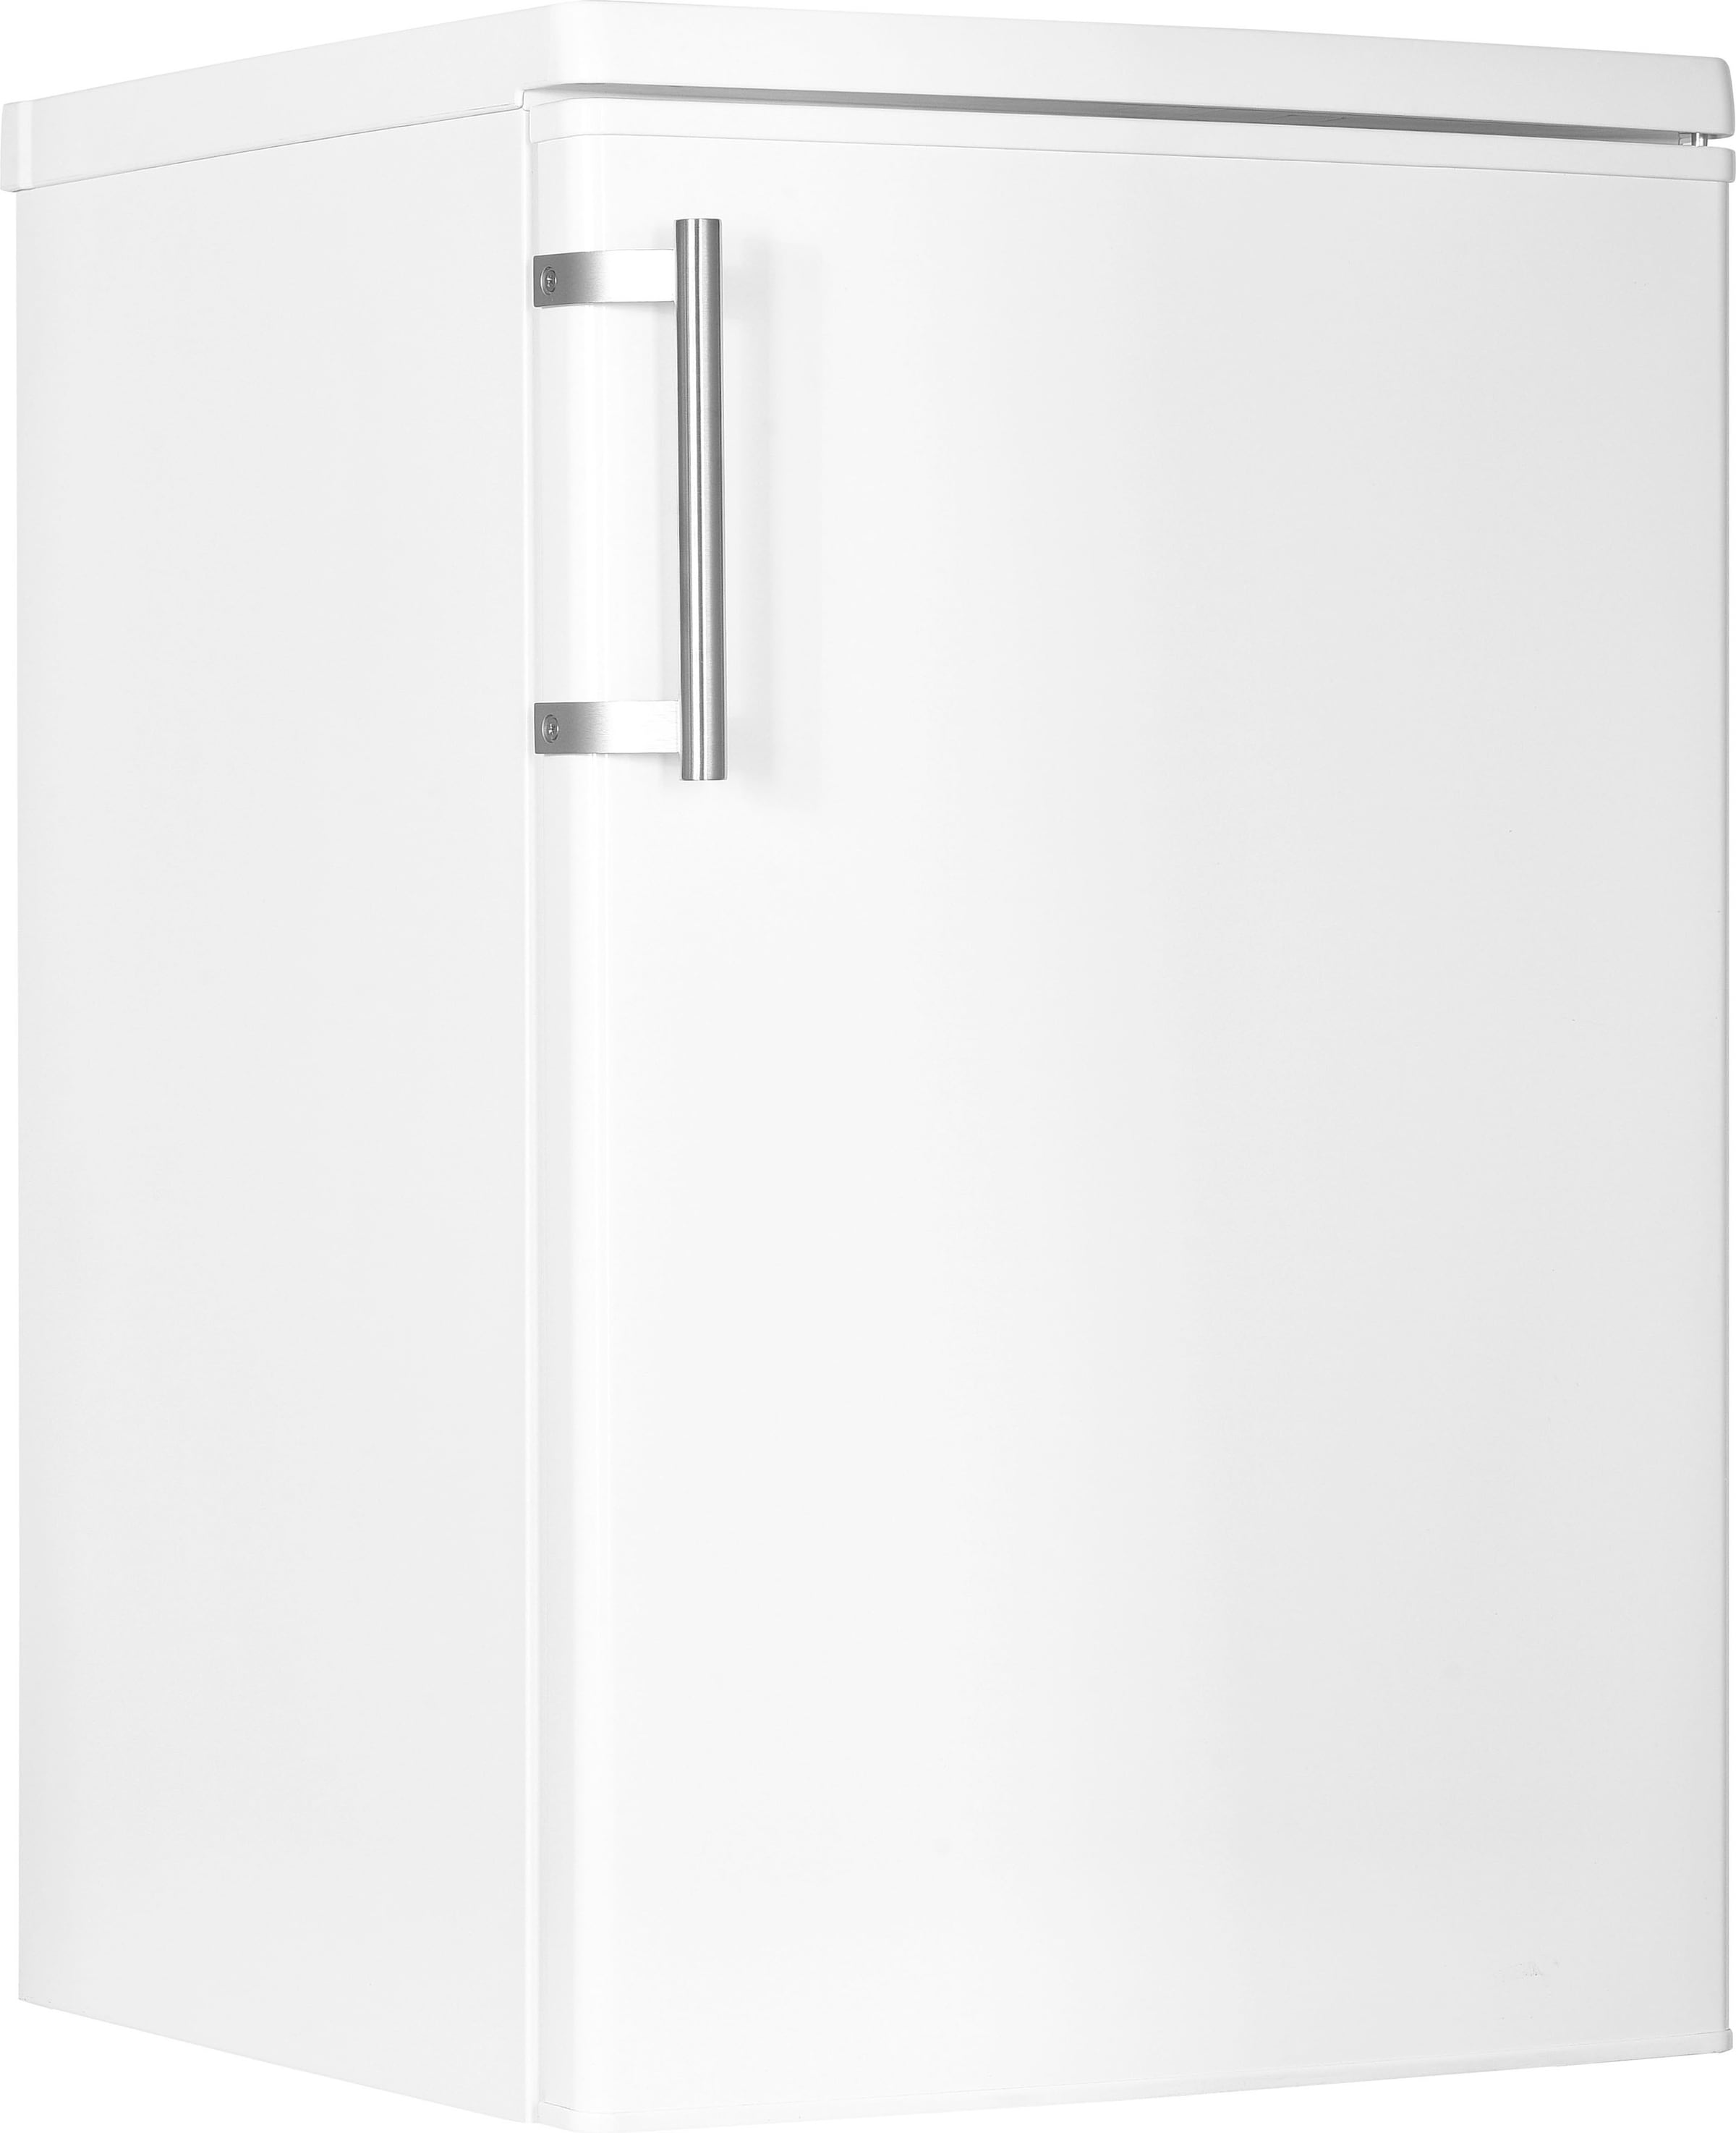 Kühlschrank »HKS8555GD«, HKS8555GDW-2, 85 cm hoch, 55 cm breit, Schnellgefrierfunktion